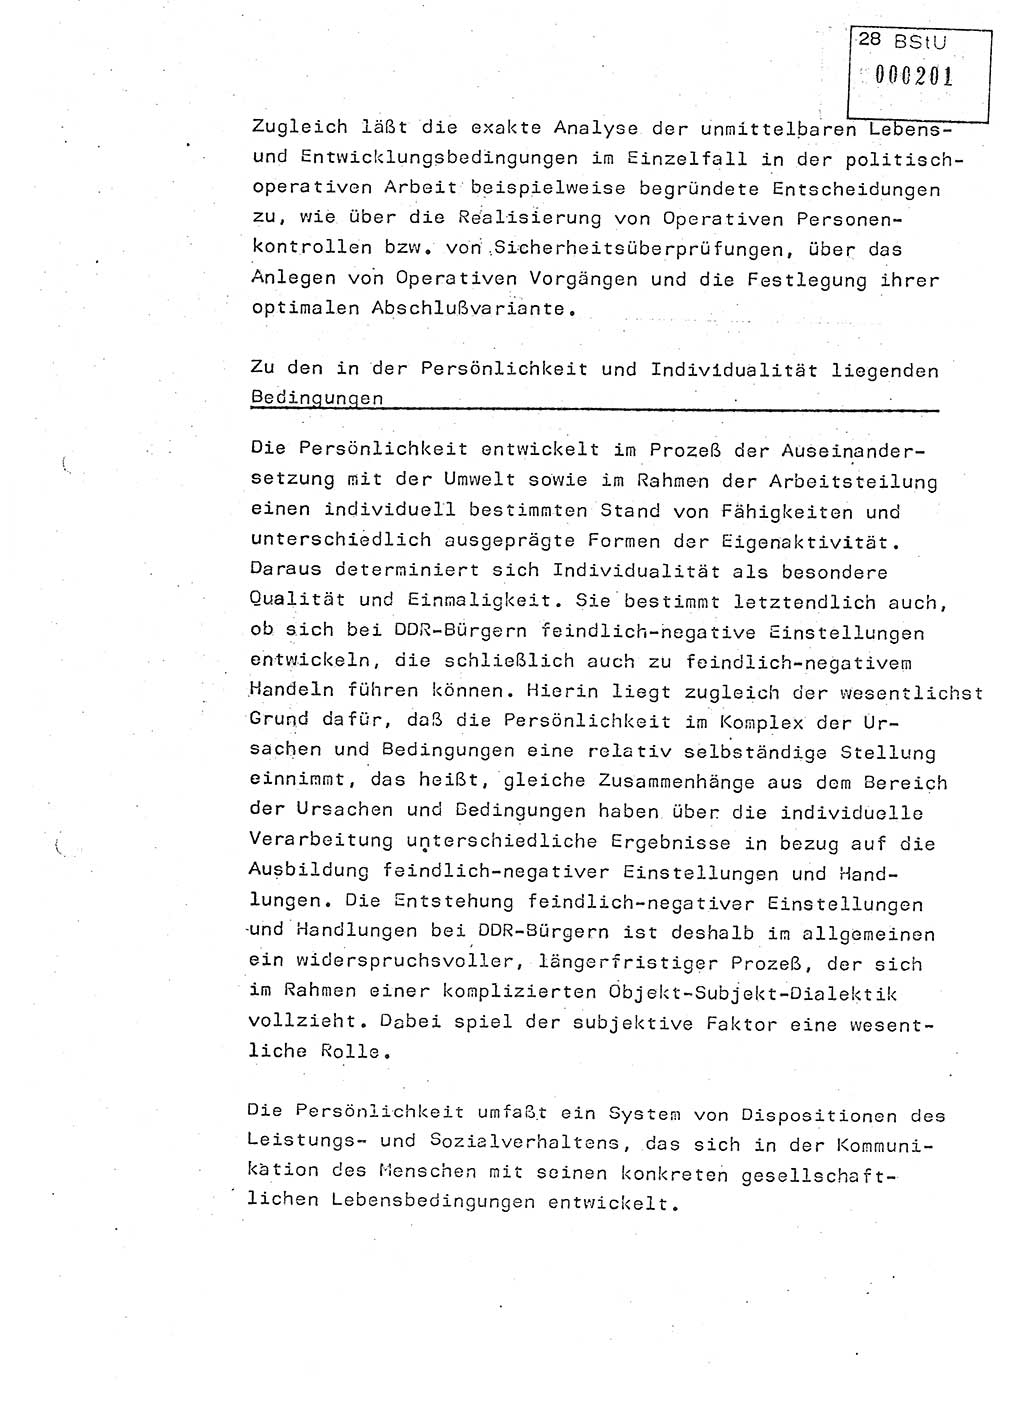 Studienmaterial Ministerium für Staatssicherheit (MfS) [Deutsche Demokratische Republik (DDR)], Hauptabteilung (HA) Ⅸ/ Auswertungs- und Kontrollgruppe (AKG), Berlin ca. 1986, Seite 28 (Stud.-Mat. MfS DDR HA Ⅸ/AKG 1986, S. 28)